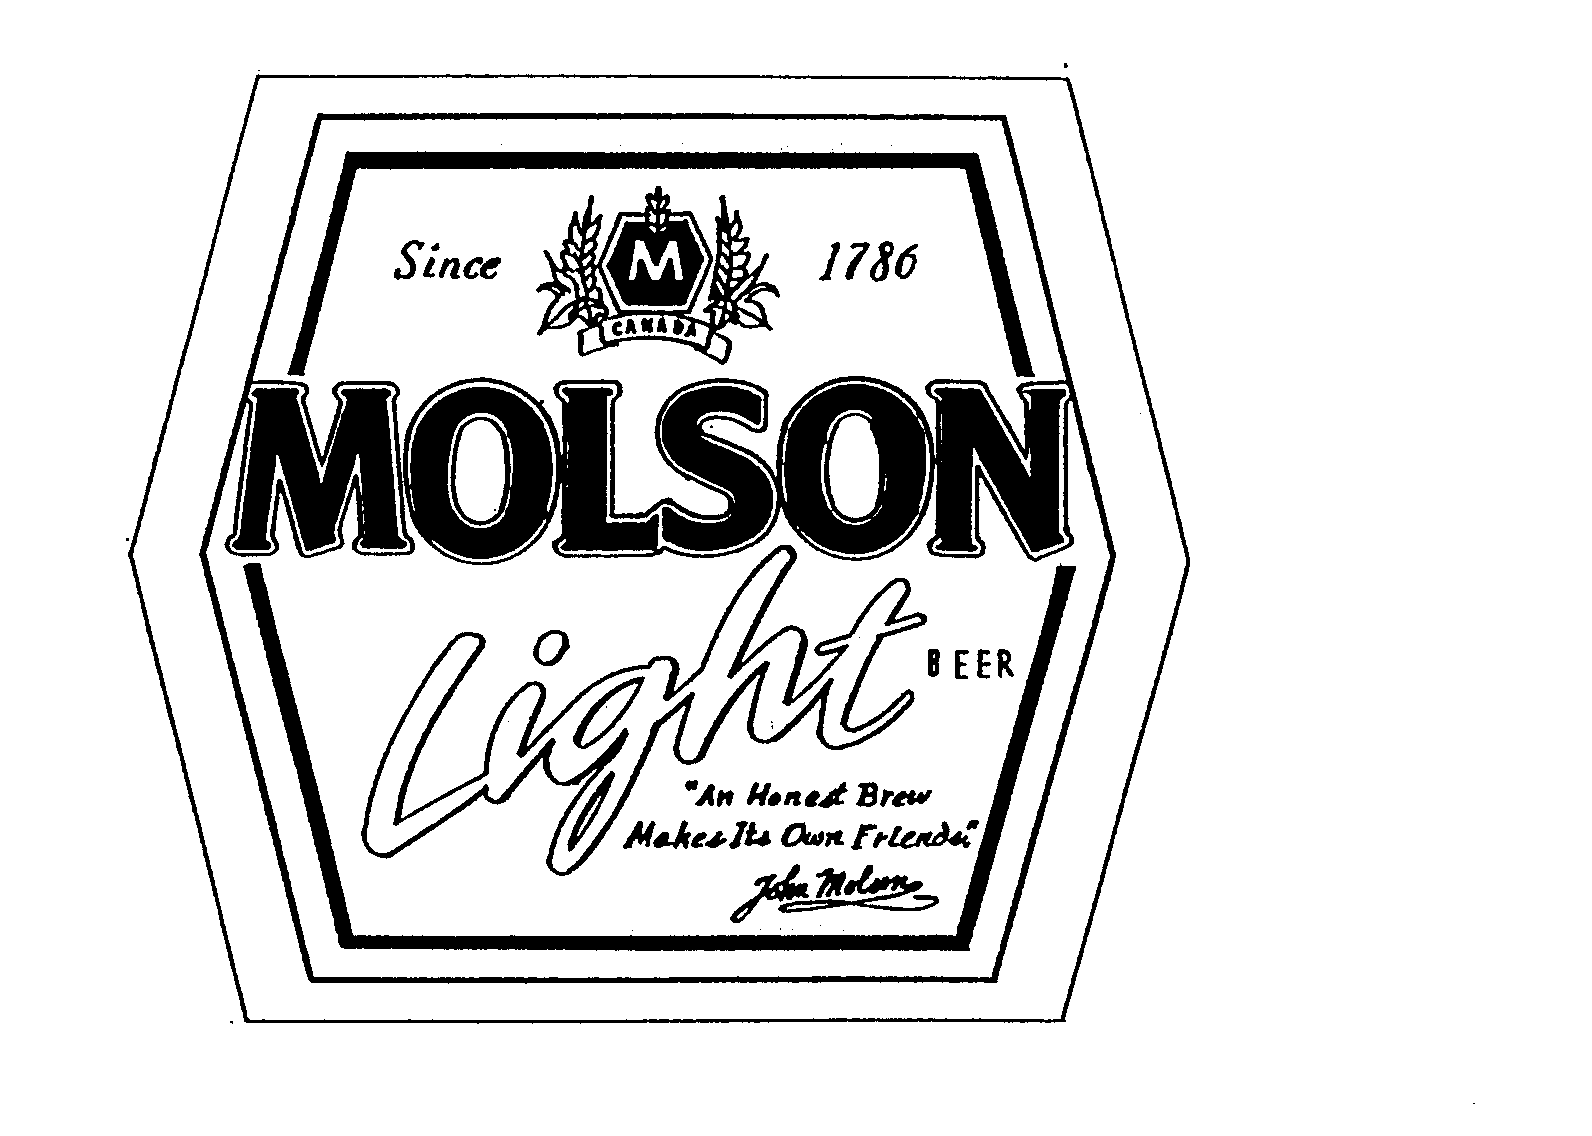  MOLSON LIGHT BEER M CANADA SINCE 1786 "AN HONEST BREW MAKES ITS OWN FRIENDS." JOHN MOLSON